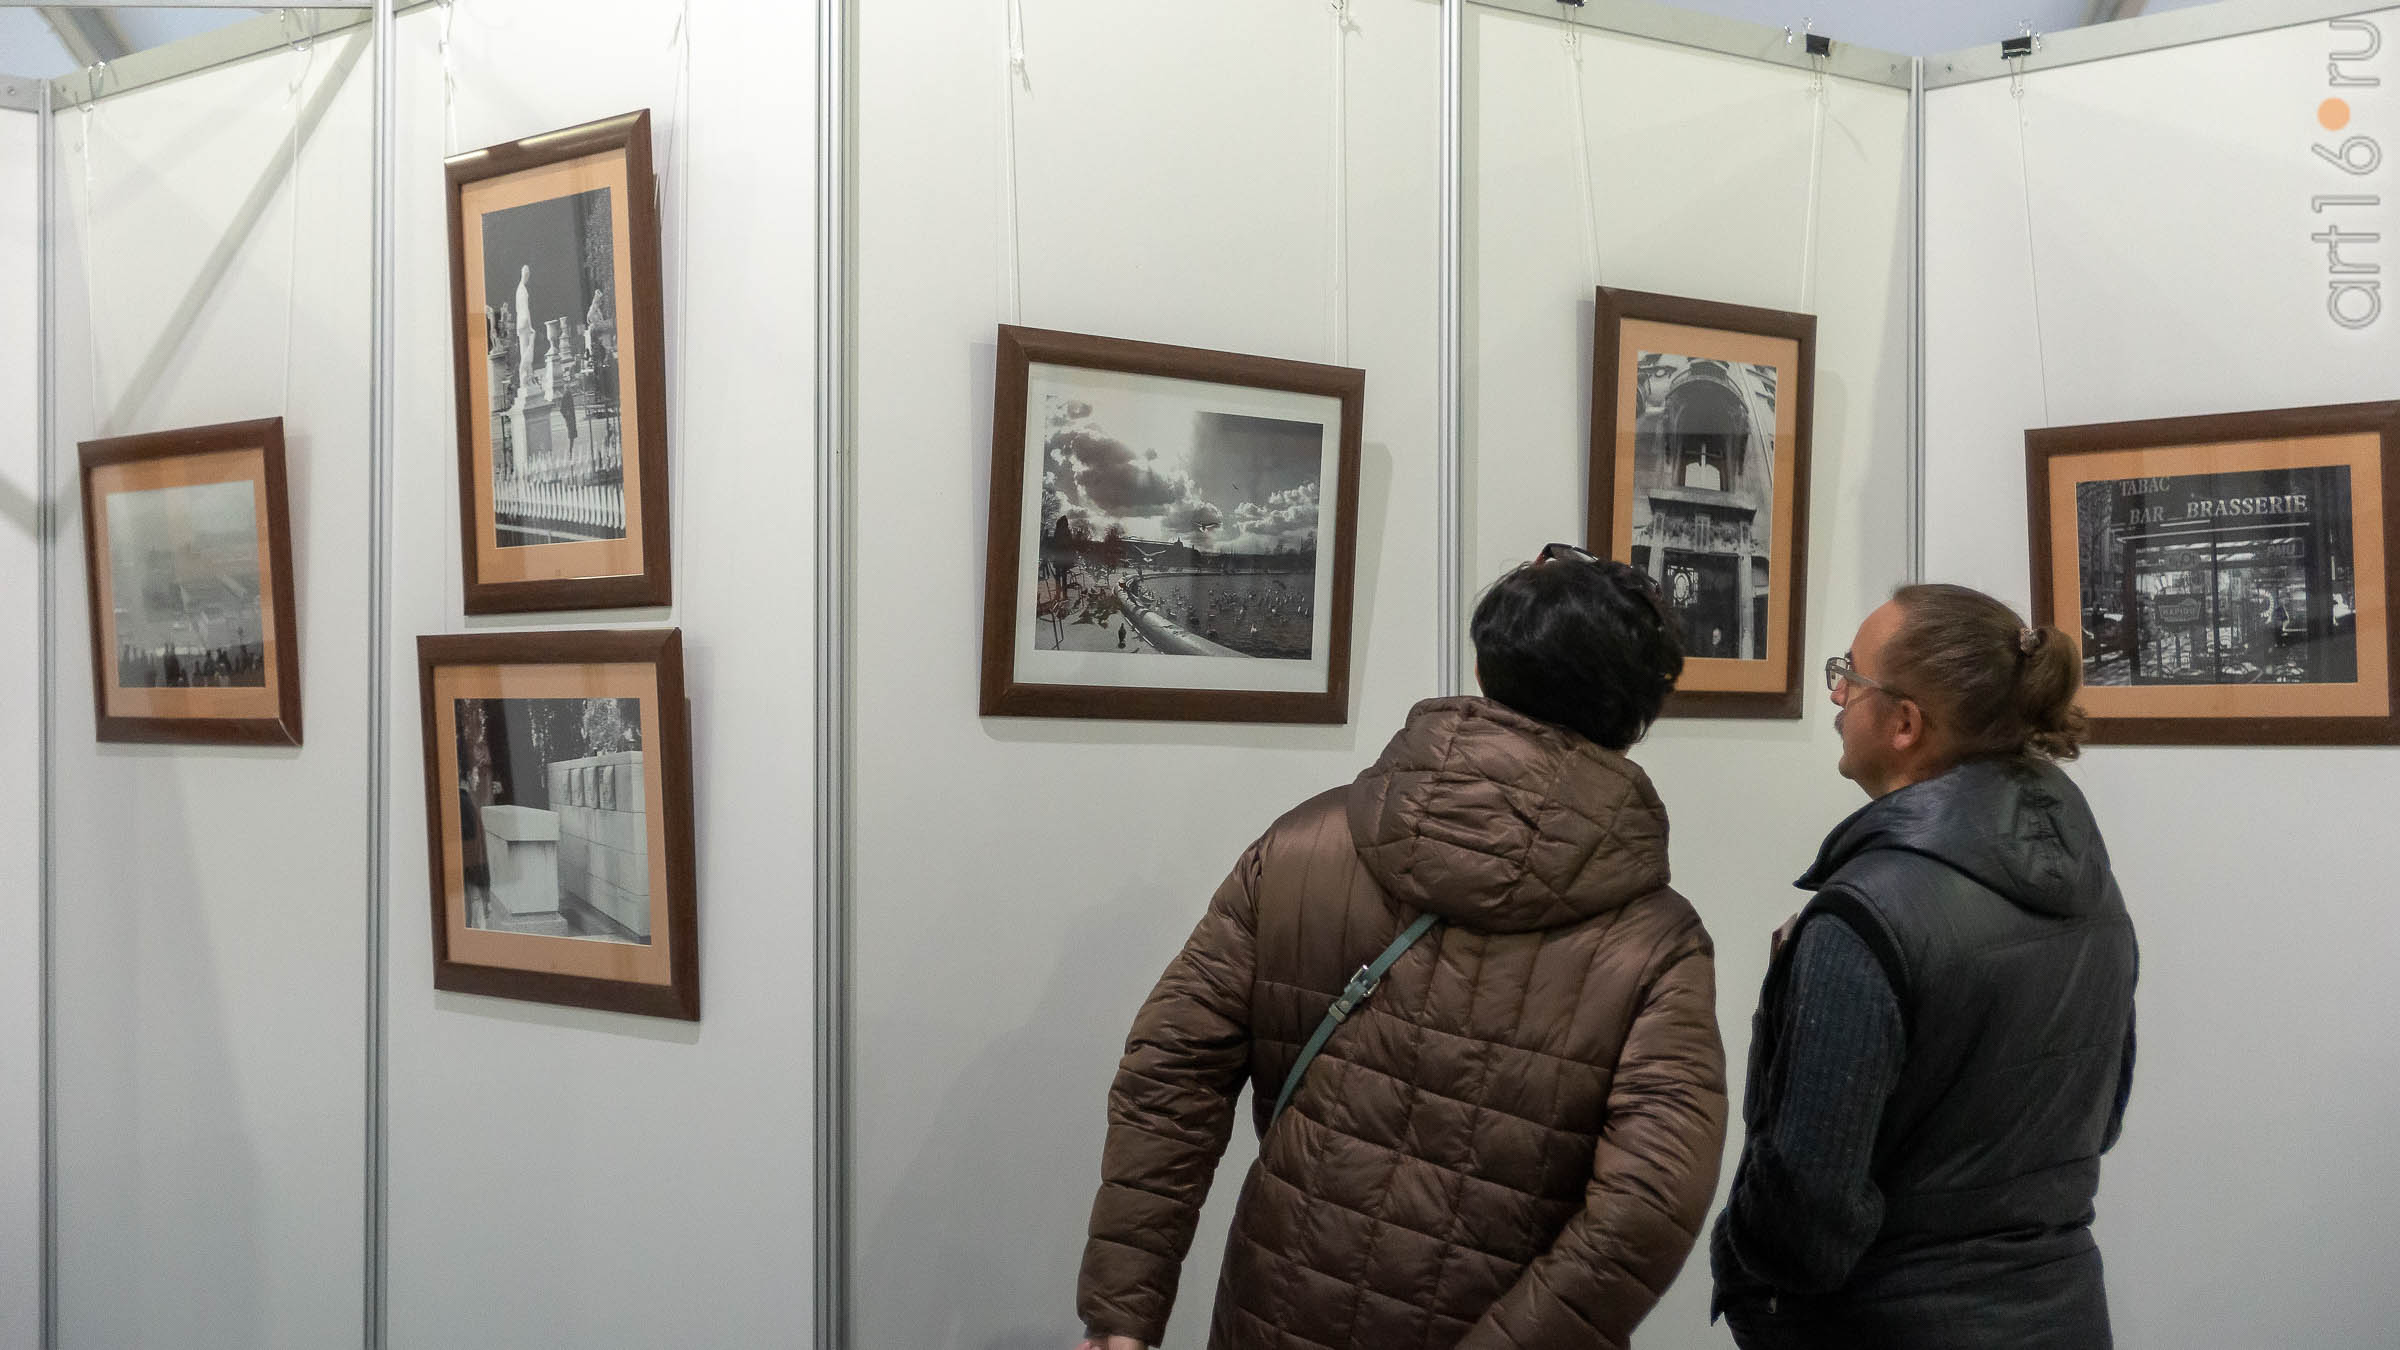 Фотовыставка «Казань-Париж». Фарит Губаев::Арт-галерея 2019